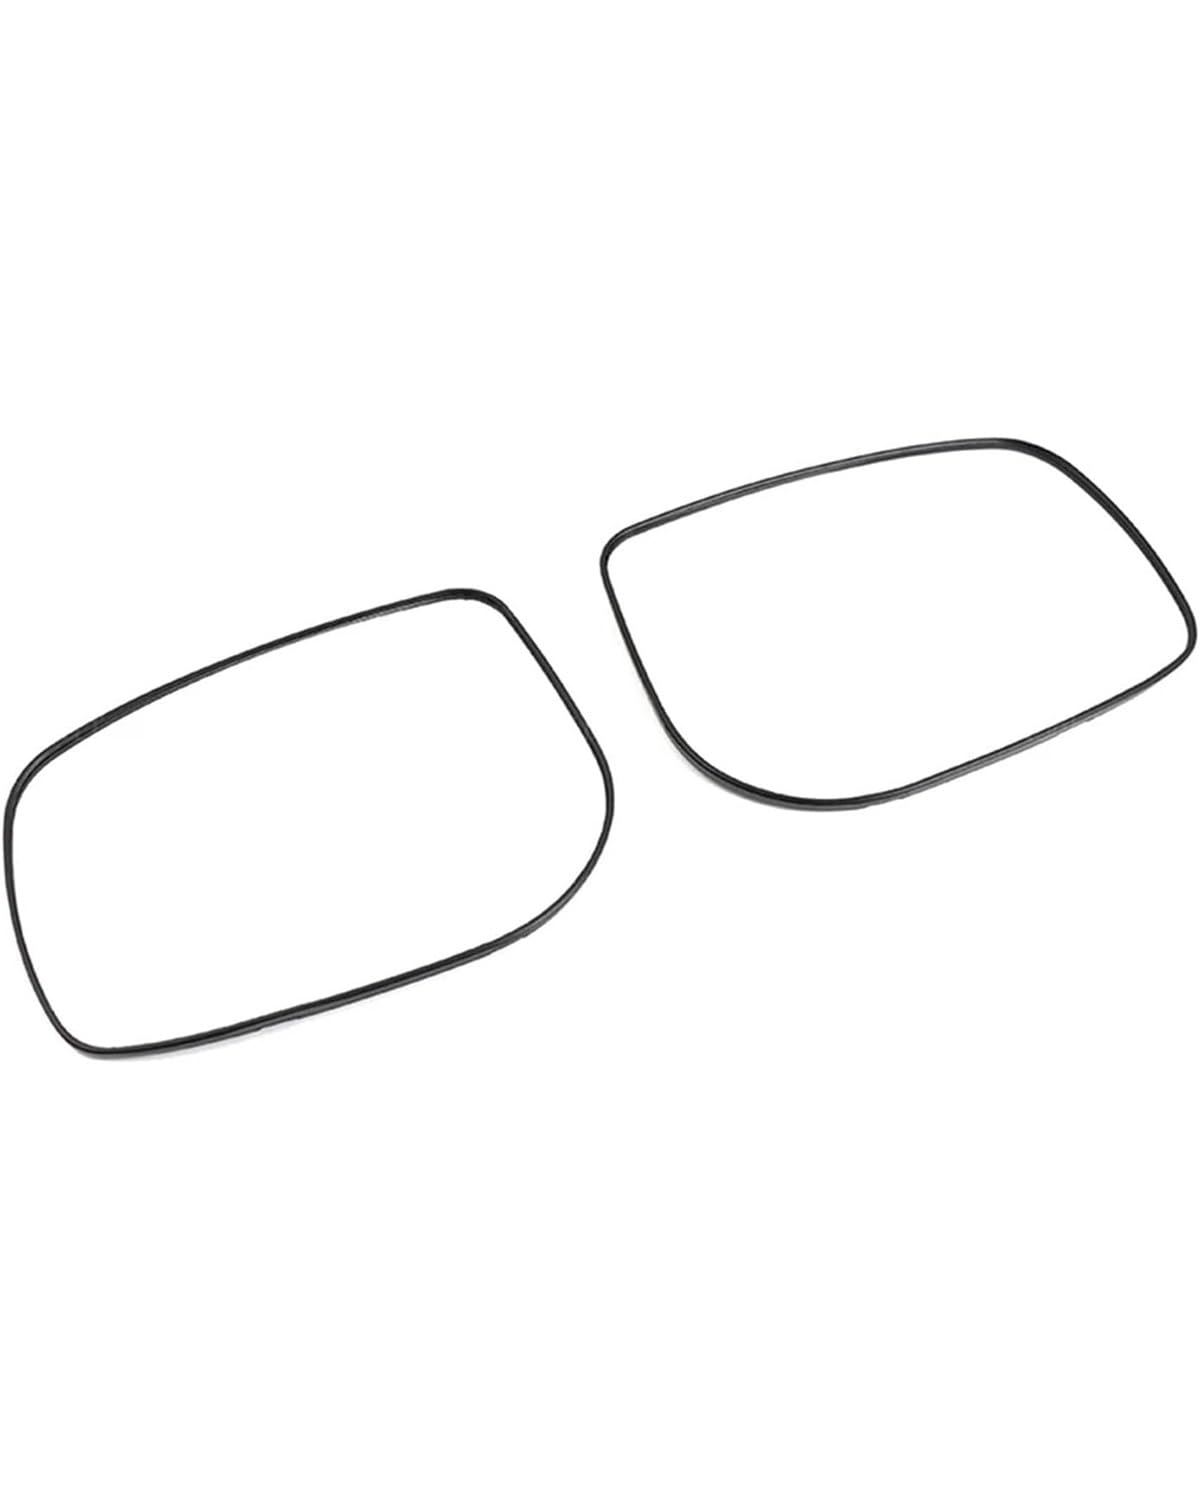 Auto Sonnenschutz Vorhang Für Reiz Für Mark-X Für X120 Für GRX130 2006-2009 Umkehrrückspiegellinse Autorückspiegel Seitenflügel Beheiztes Rückspiegelglas Car Shades(Left) von MXDDWLKJ